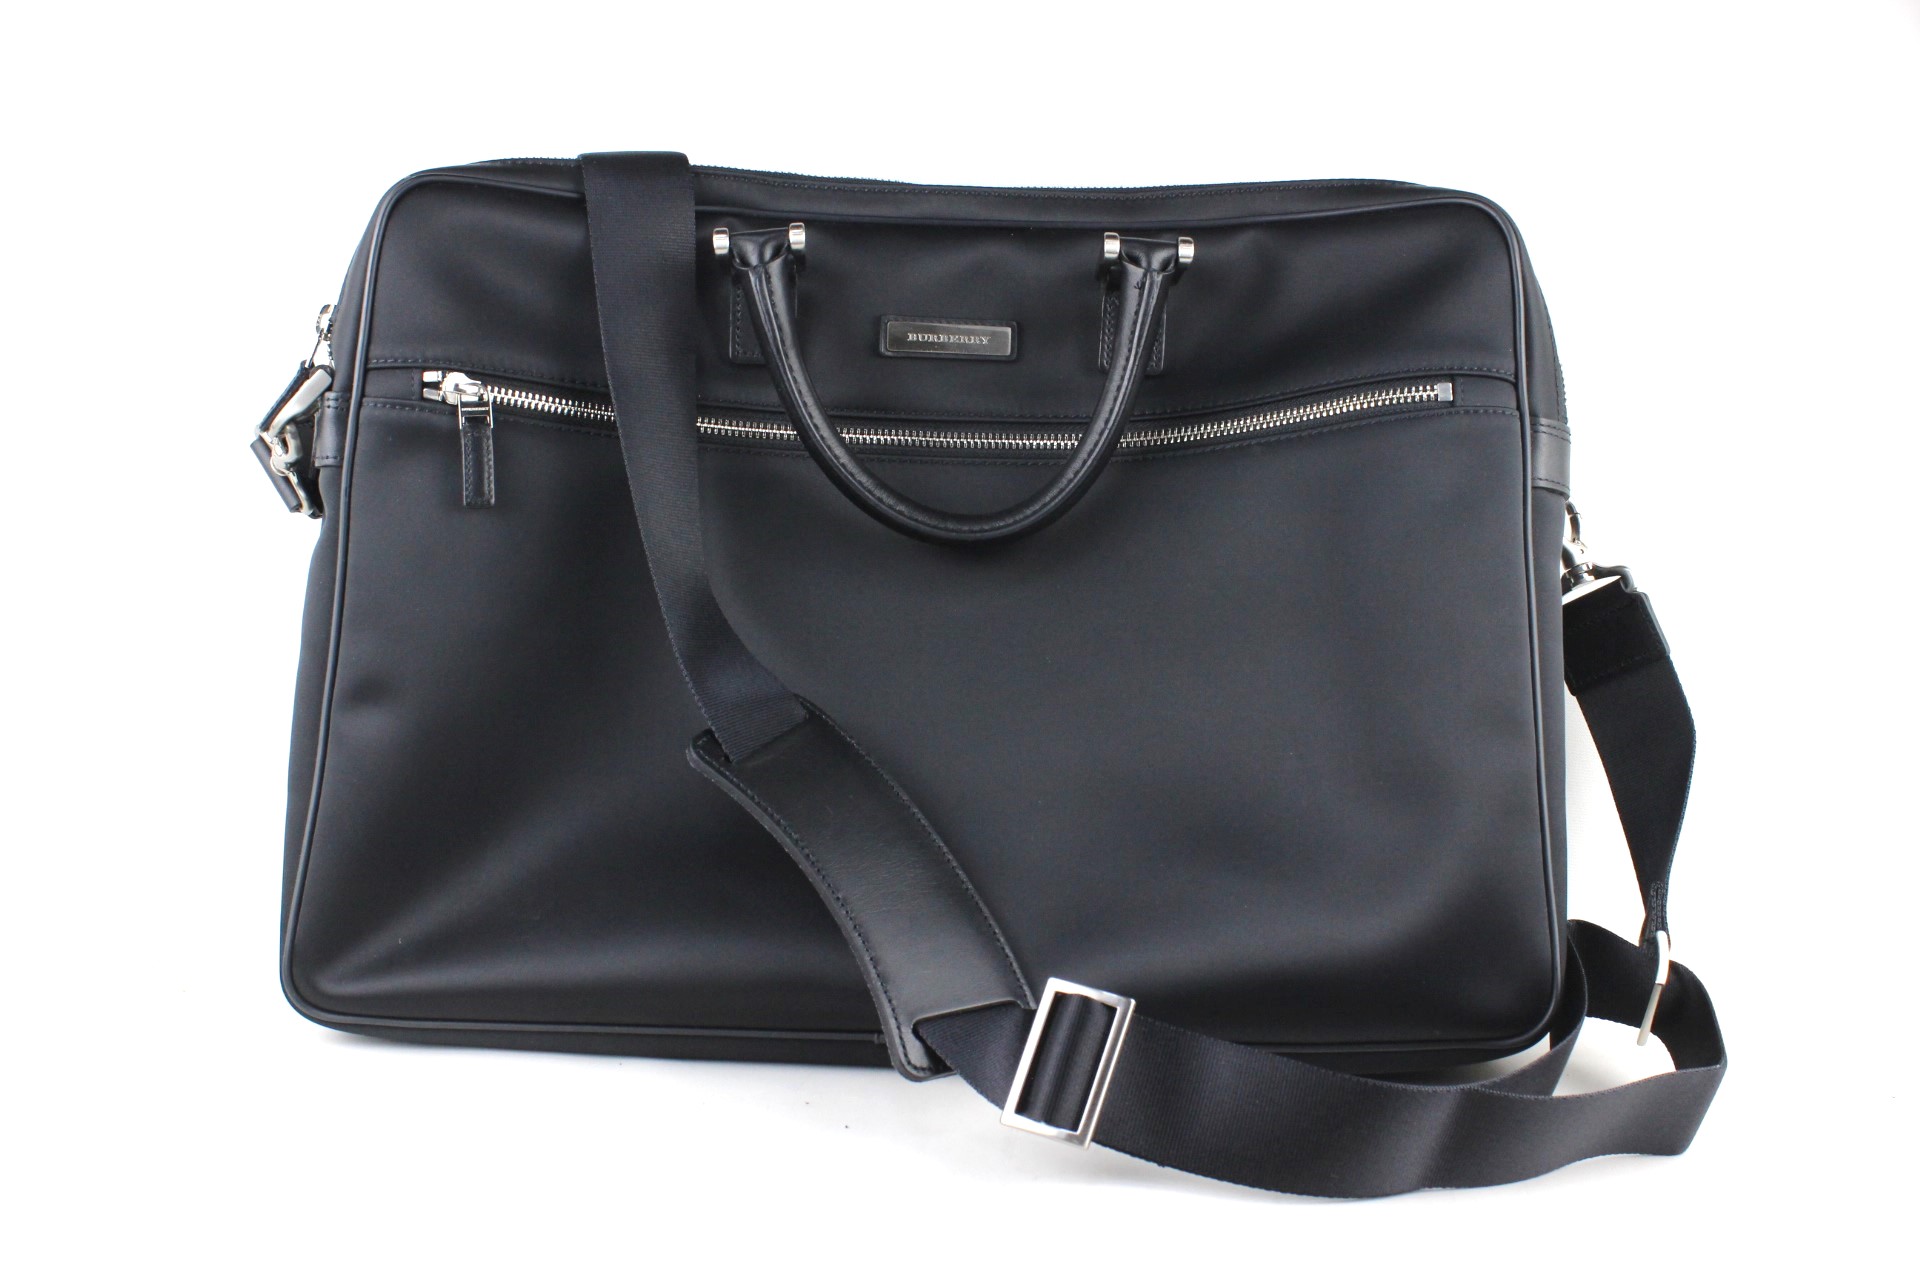  Burberry 2way сумка портфель черный чёрный в клетку серебряный металлические принадлежности ремешок 